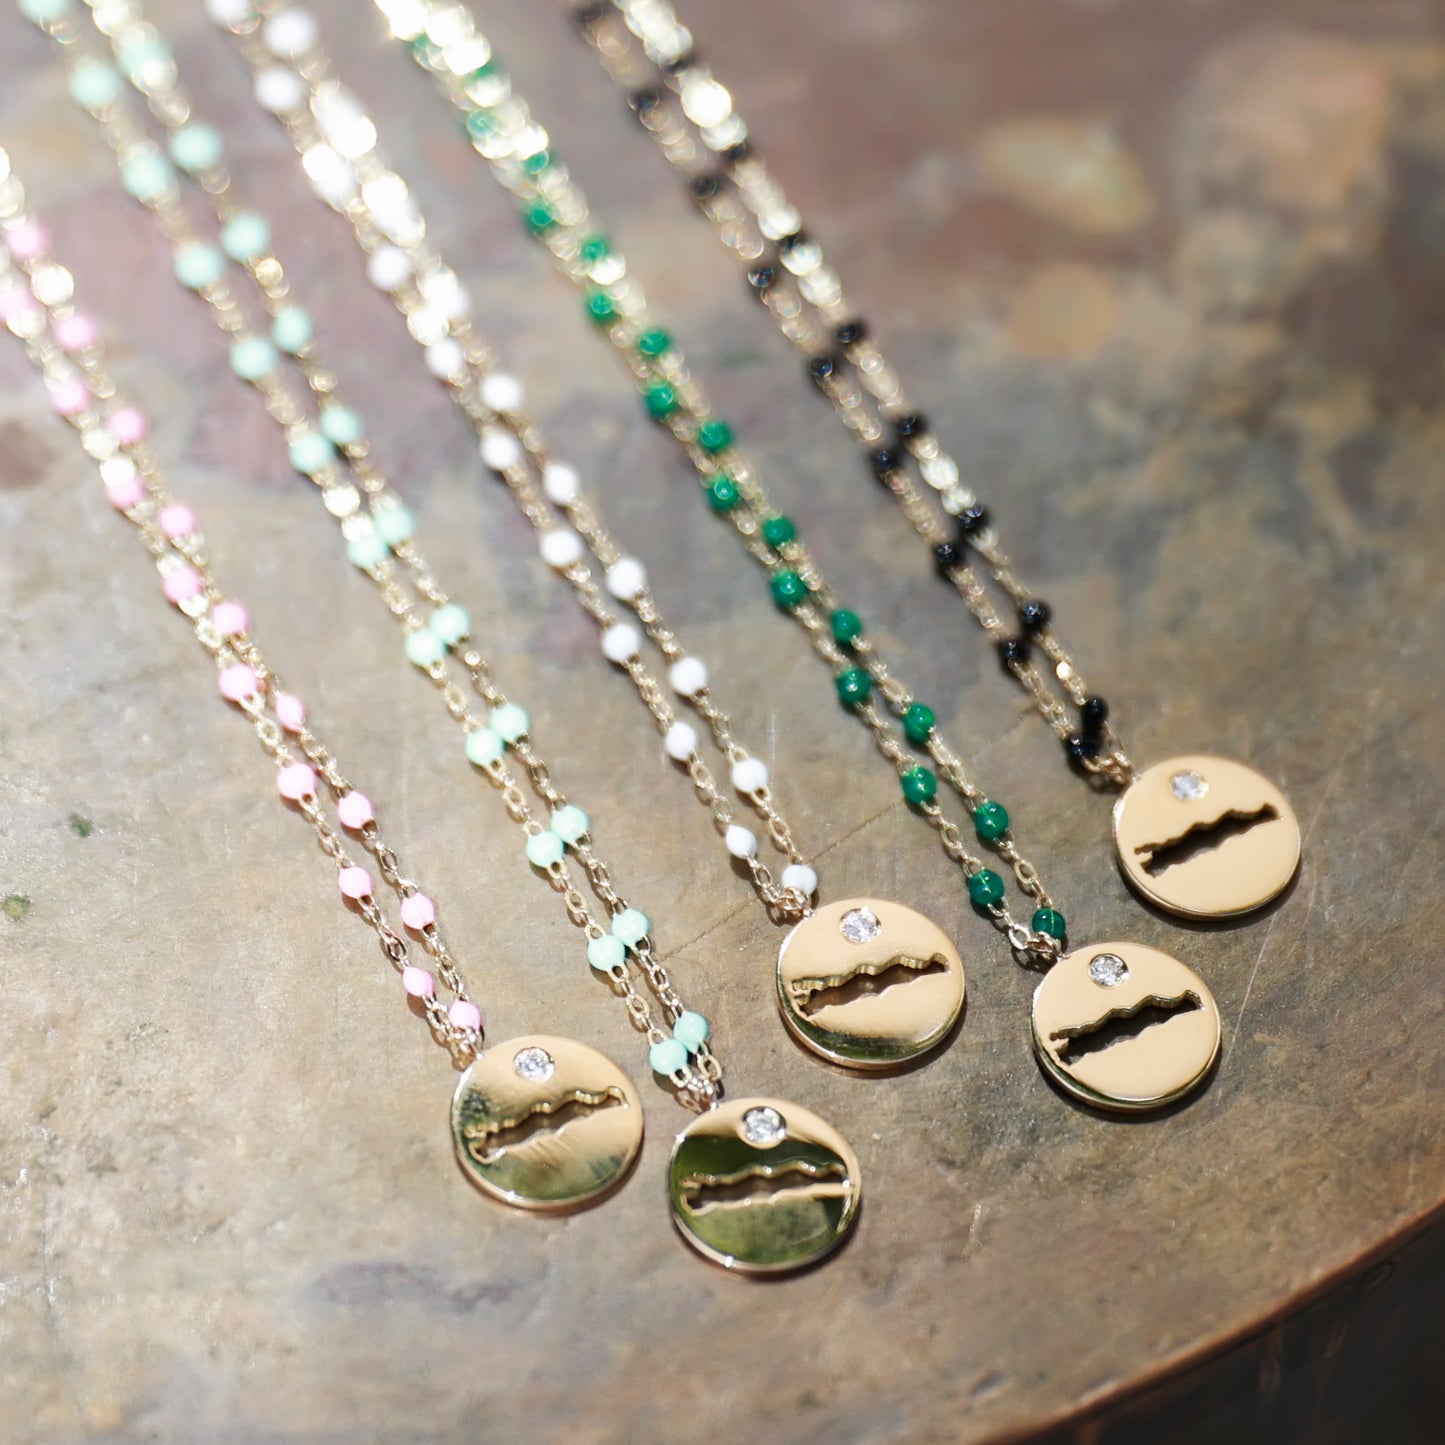 Le Rive 30A Single Diamond Petite Coin Necklace in Emerald